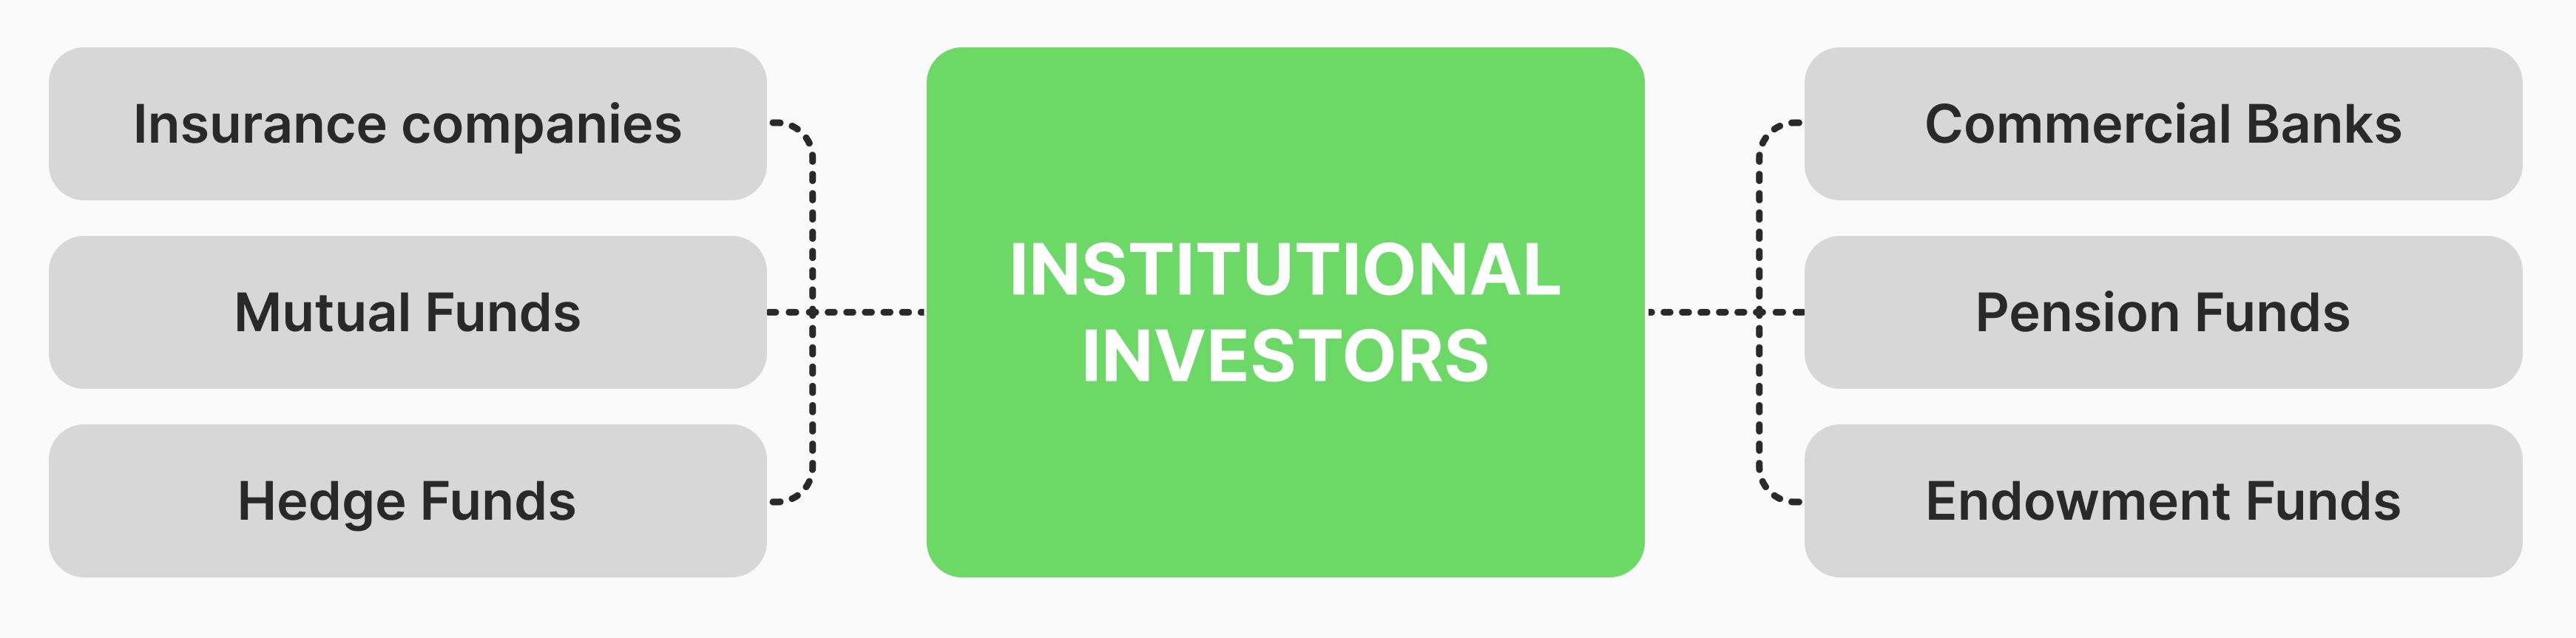  Institutional investors types